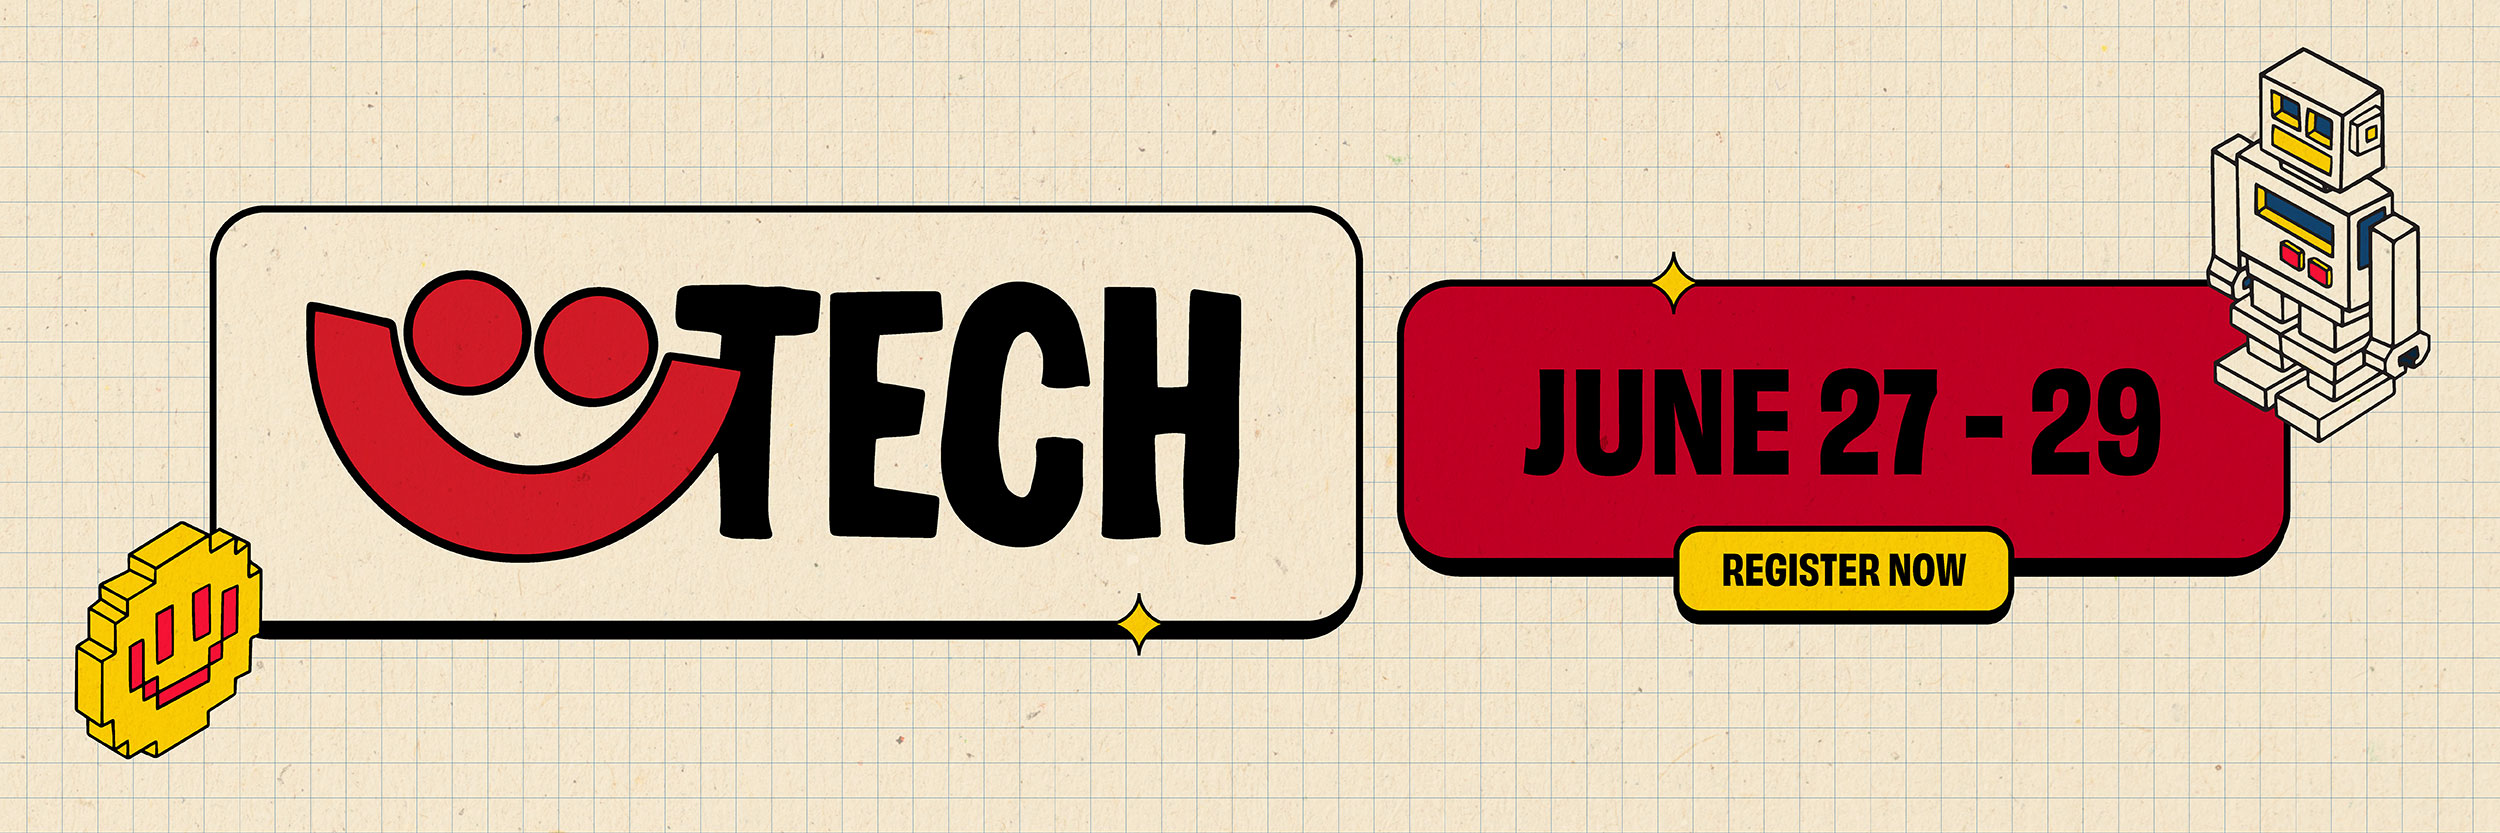 Summerfest Tech June 27 - June 29